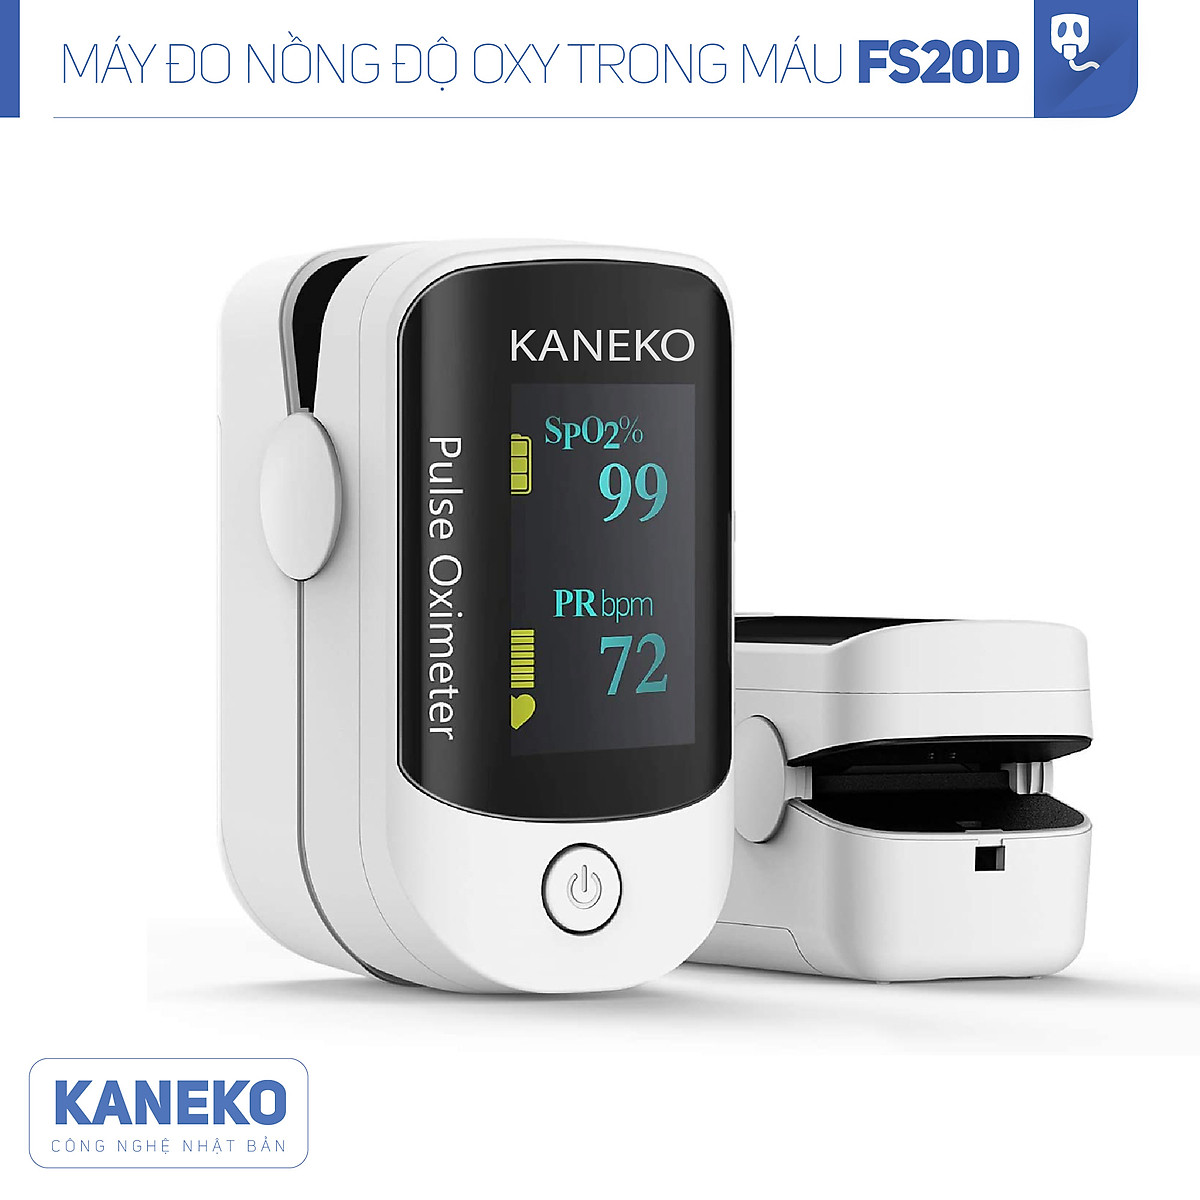 Máy đo nồng độ oxy trong máu KANEKO FS20D,máy đo nồng độ SPO2,máy đo oxy kẹp tay kẹp tai kẹp chân,máy đo khí oxy có màn hình hiển thị rõ ràng,máy đo nhịp tim